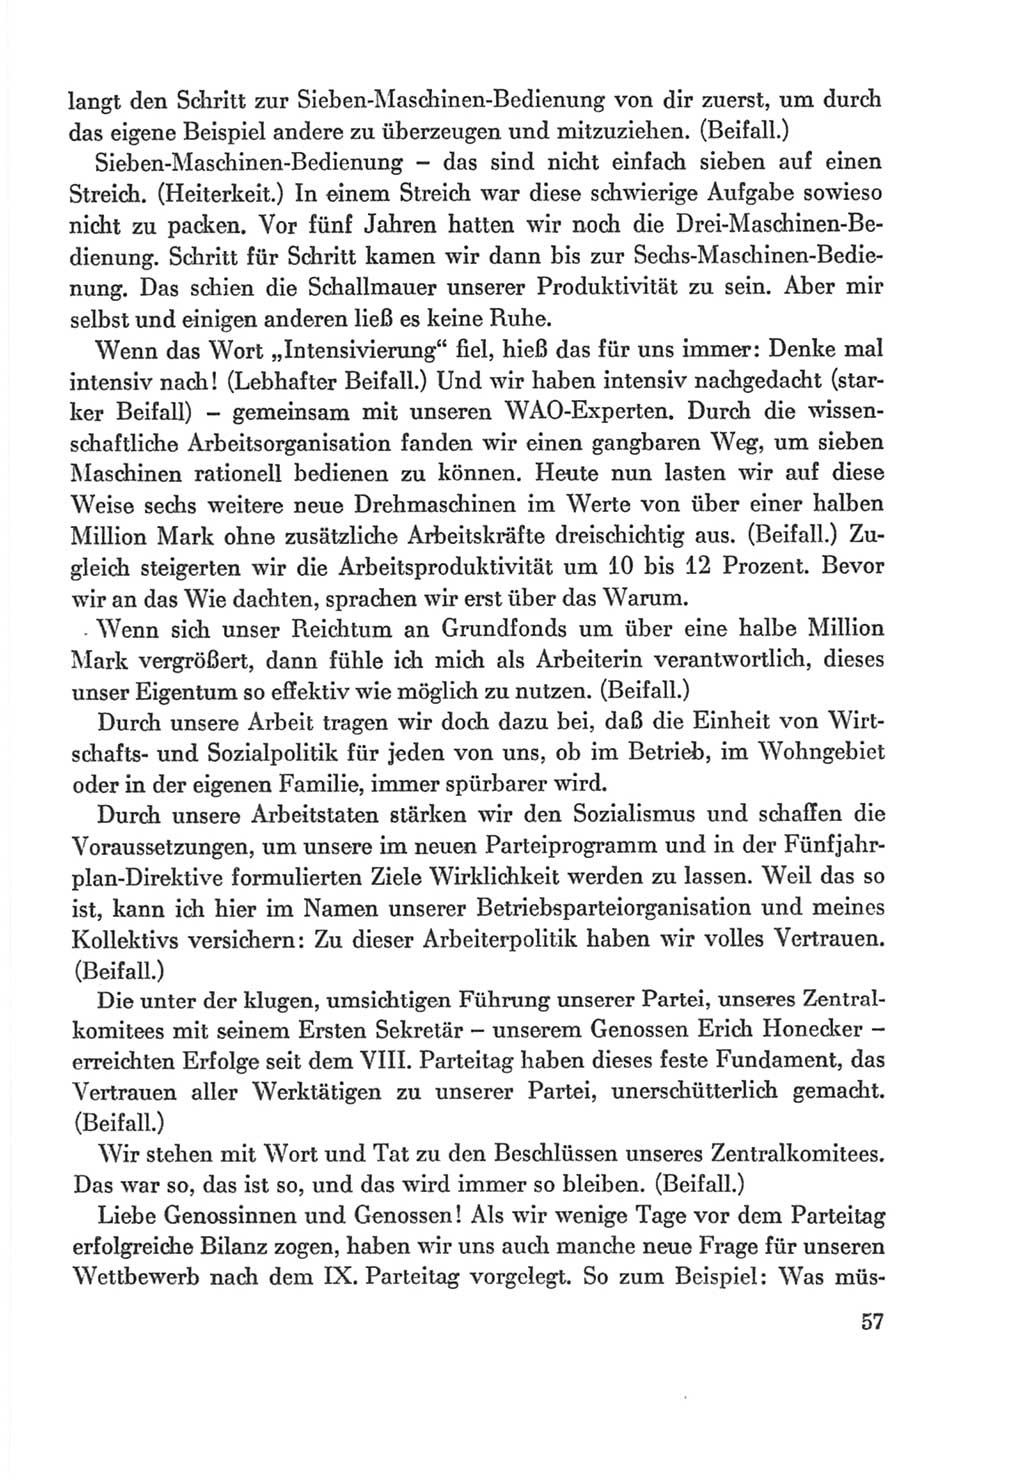 Protokoll der Verhandlungen des Ⅸ. Parteitages der Sozialistischen Einheitspartei Deutschlands (SED) [Deutsche Demokratische Republik (DDR)] 1976, Band 2, Seite 57 (Prot. Verh. Ⅸ. PT SED DDR 1976, Bd. 2, S. 57)